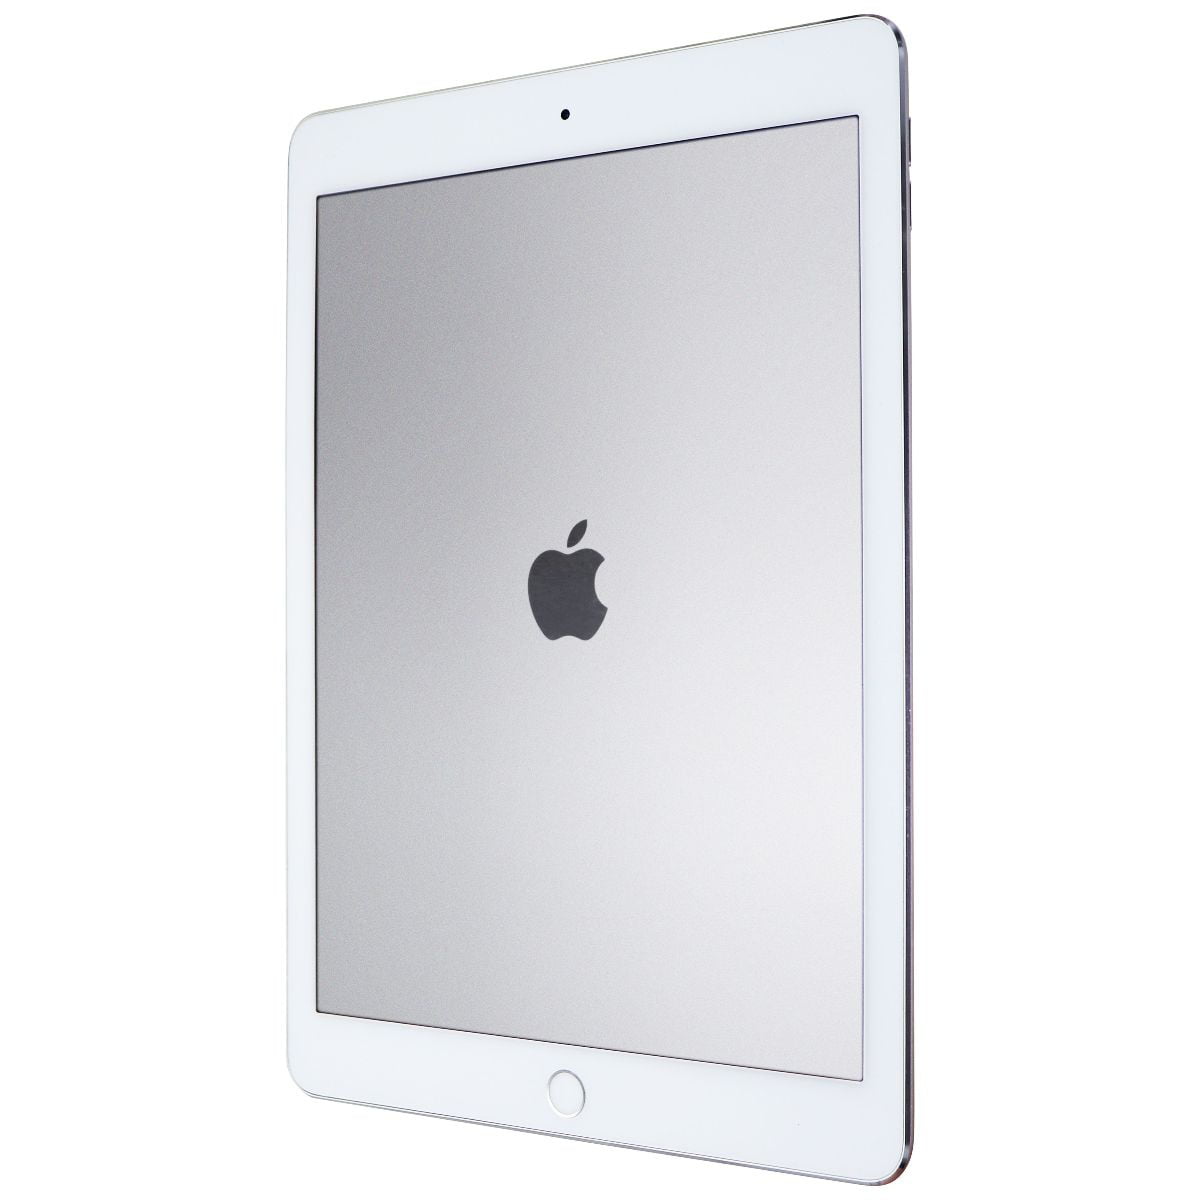 ブラック系競売APPLE iPad PRO WI-FI 32GB 美品 送料無料 付属品あり 